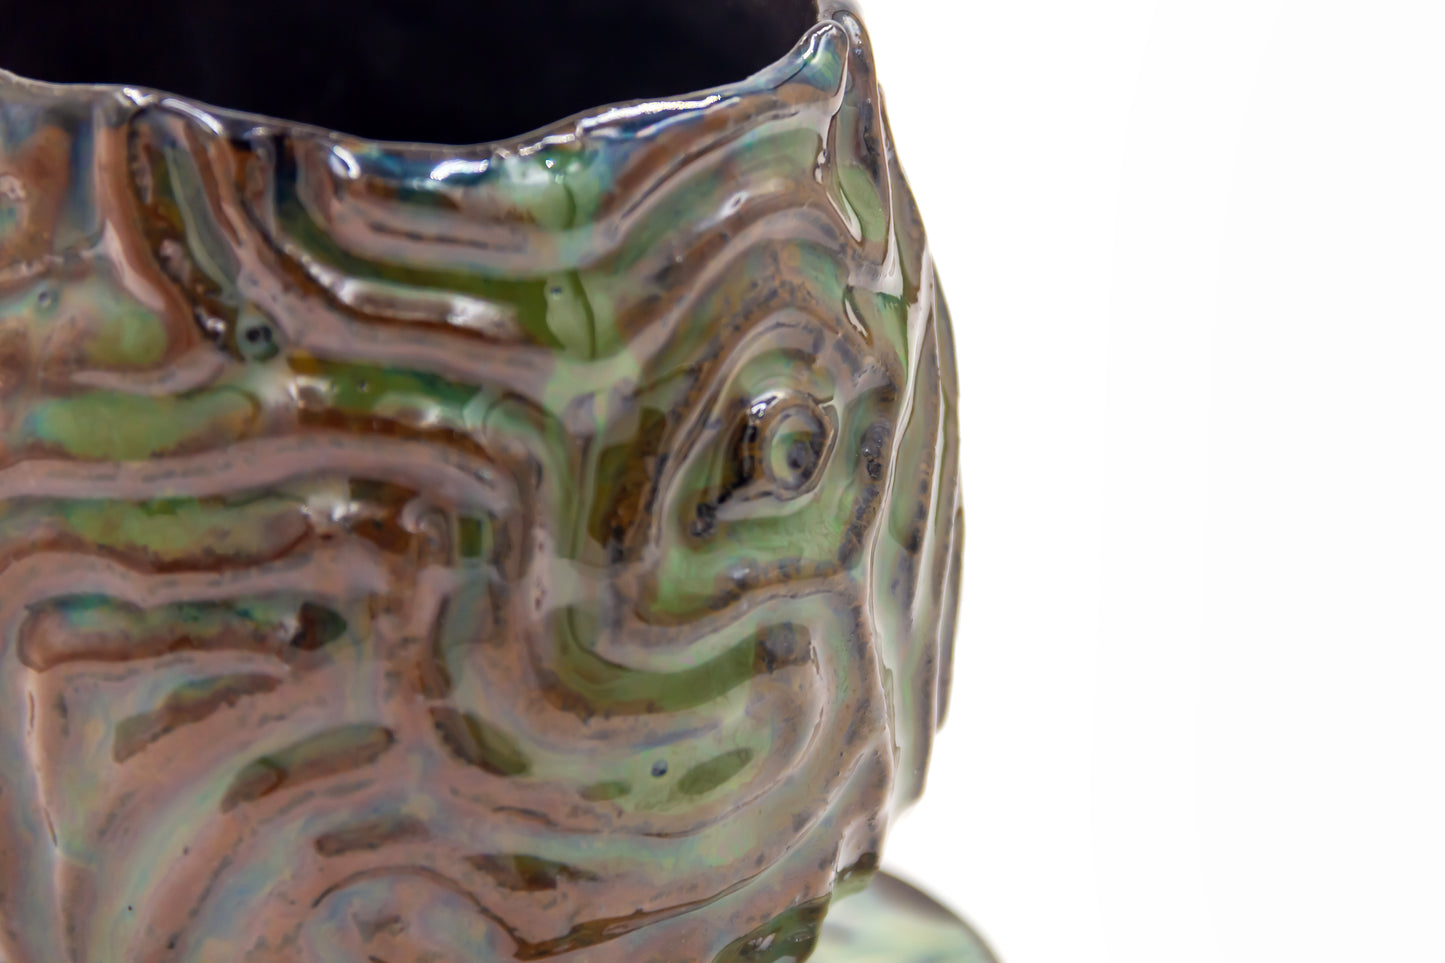 Czarka ceramiczna w kolorze zielono-brązowym ze spodkiem